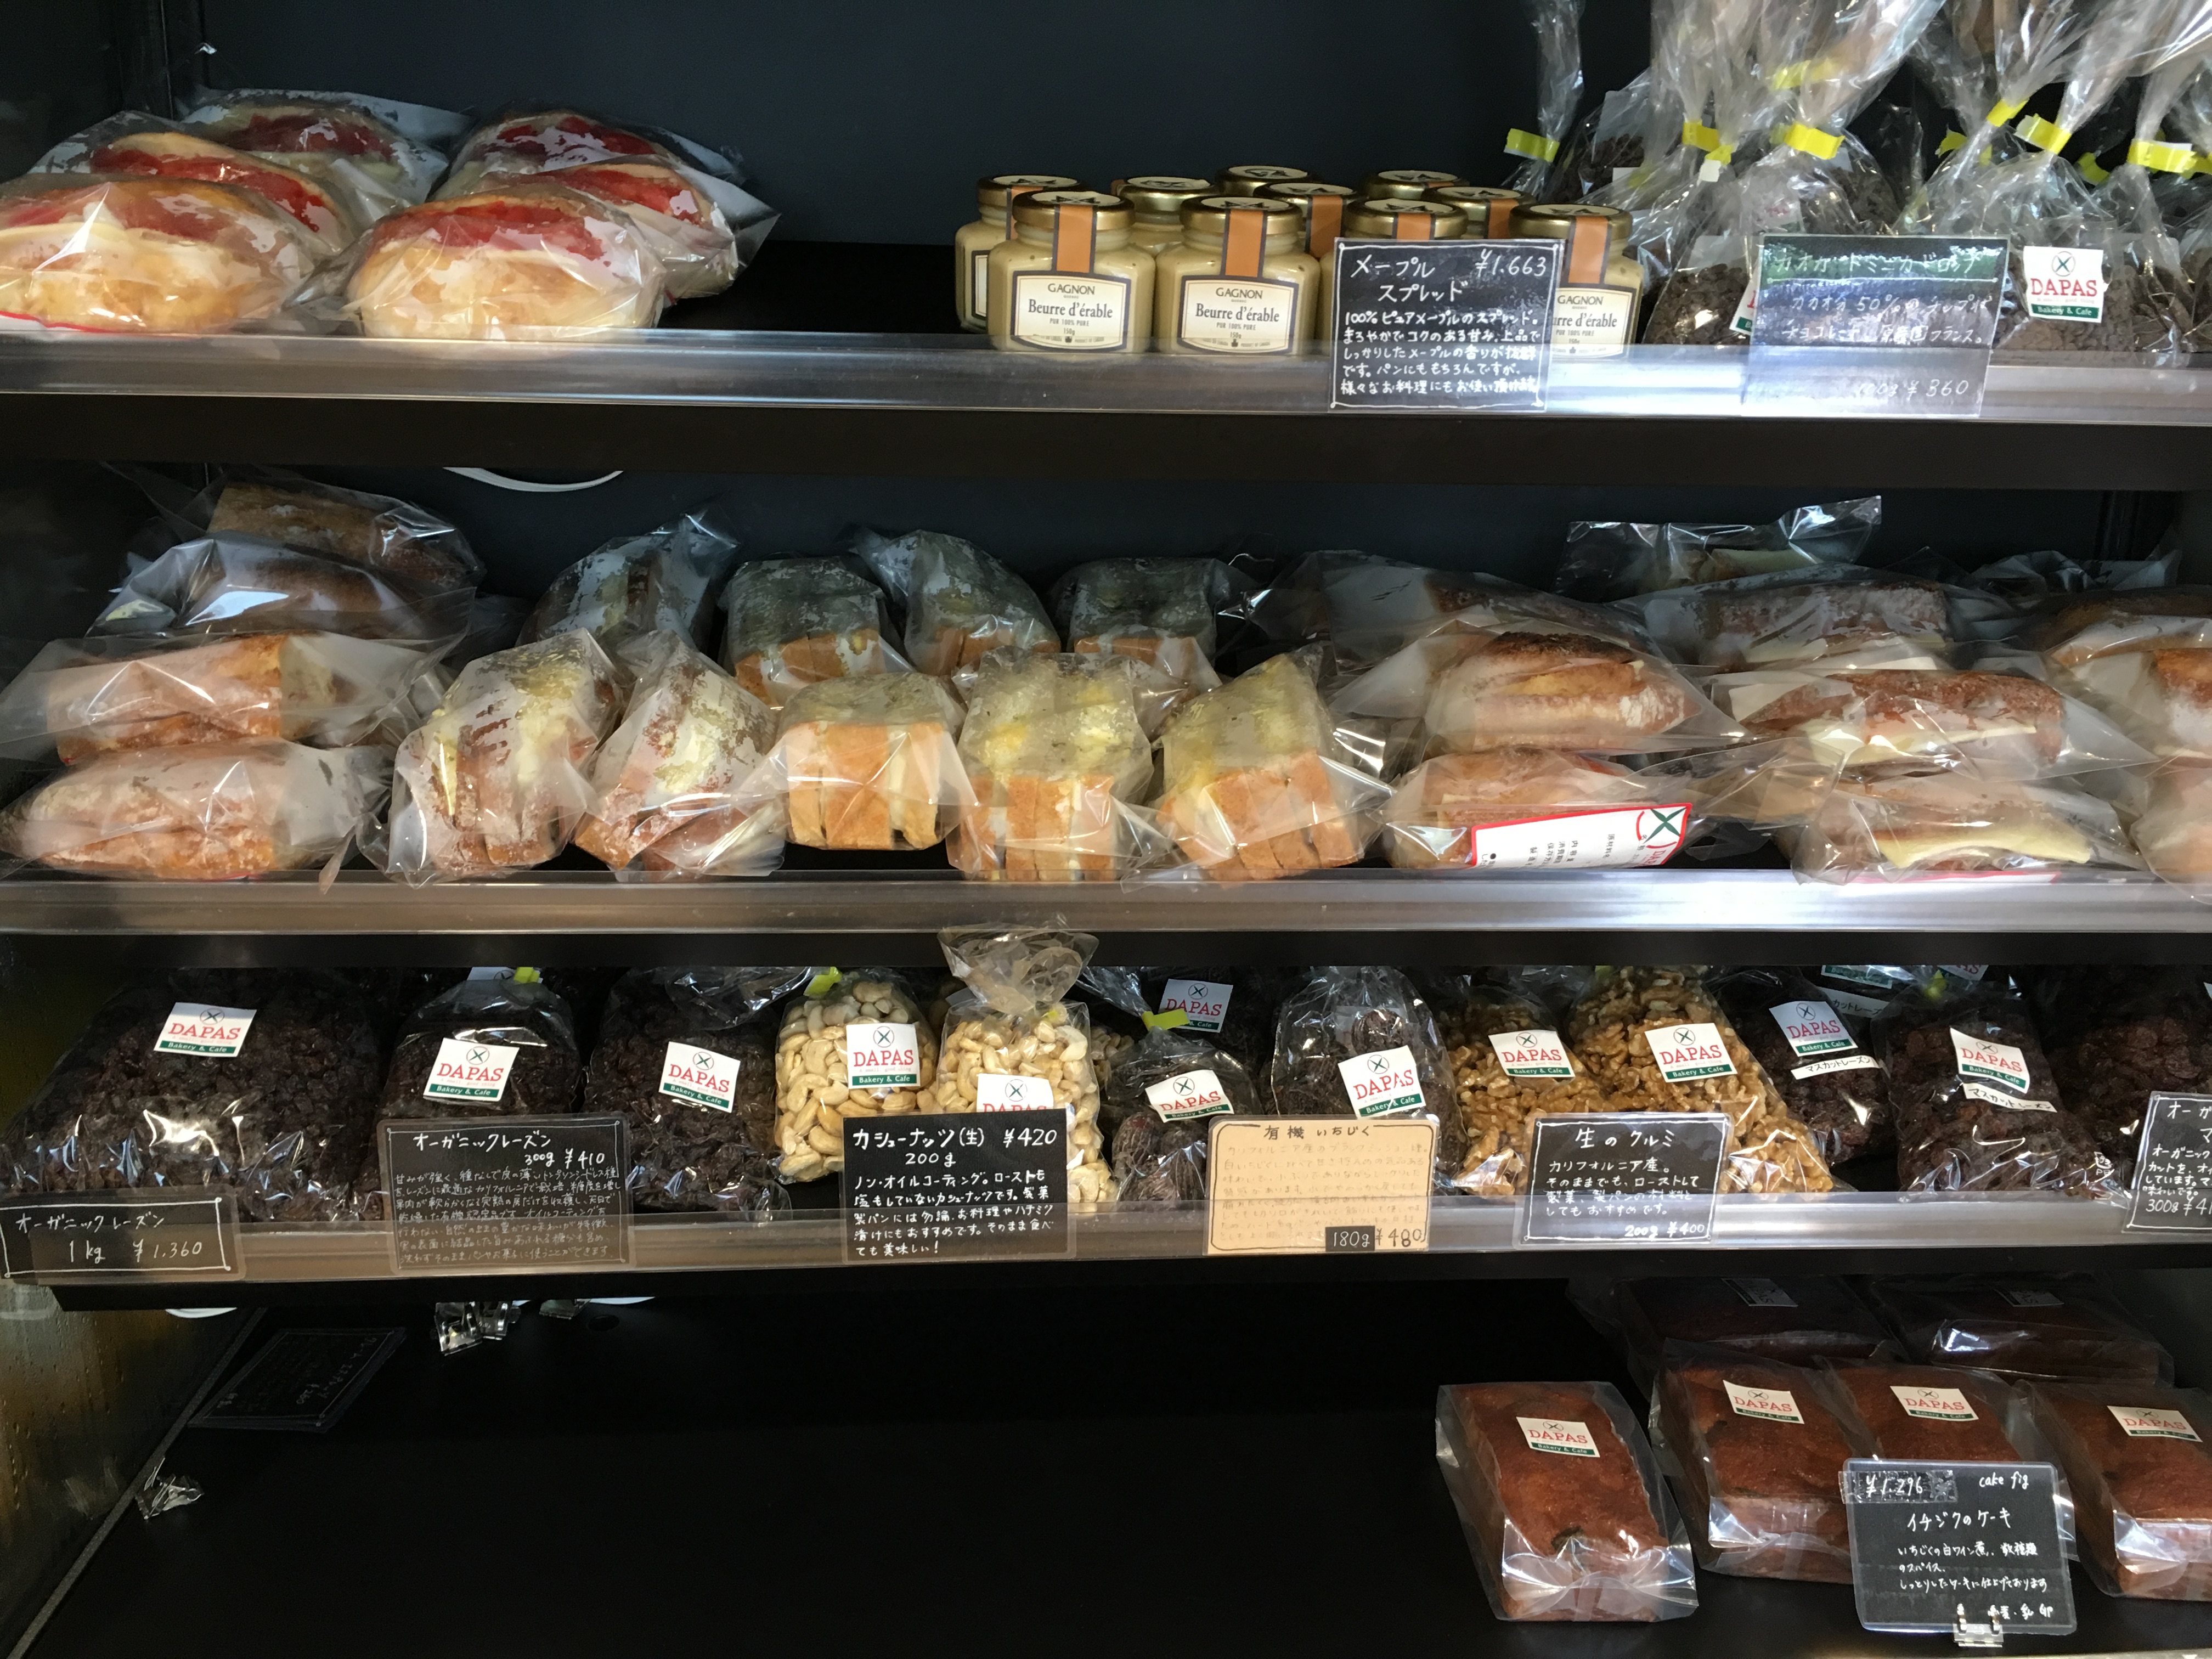 道の駅あさひかわ にある名店 Dapas 北の大地の恵み溢れるパンのクオリティは超一流 パンめぐ ぱんめぐ パンメグ